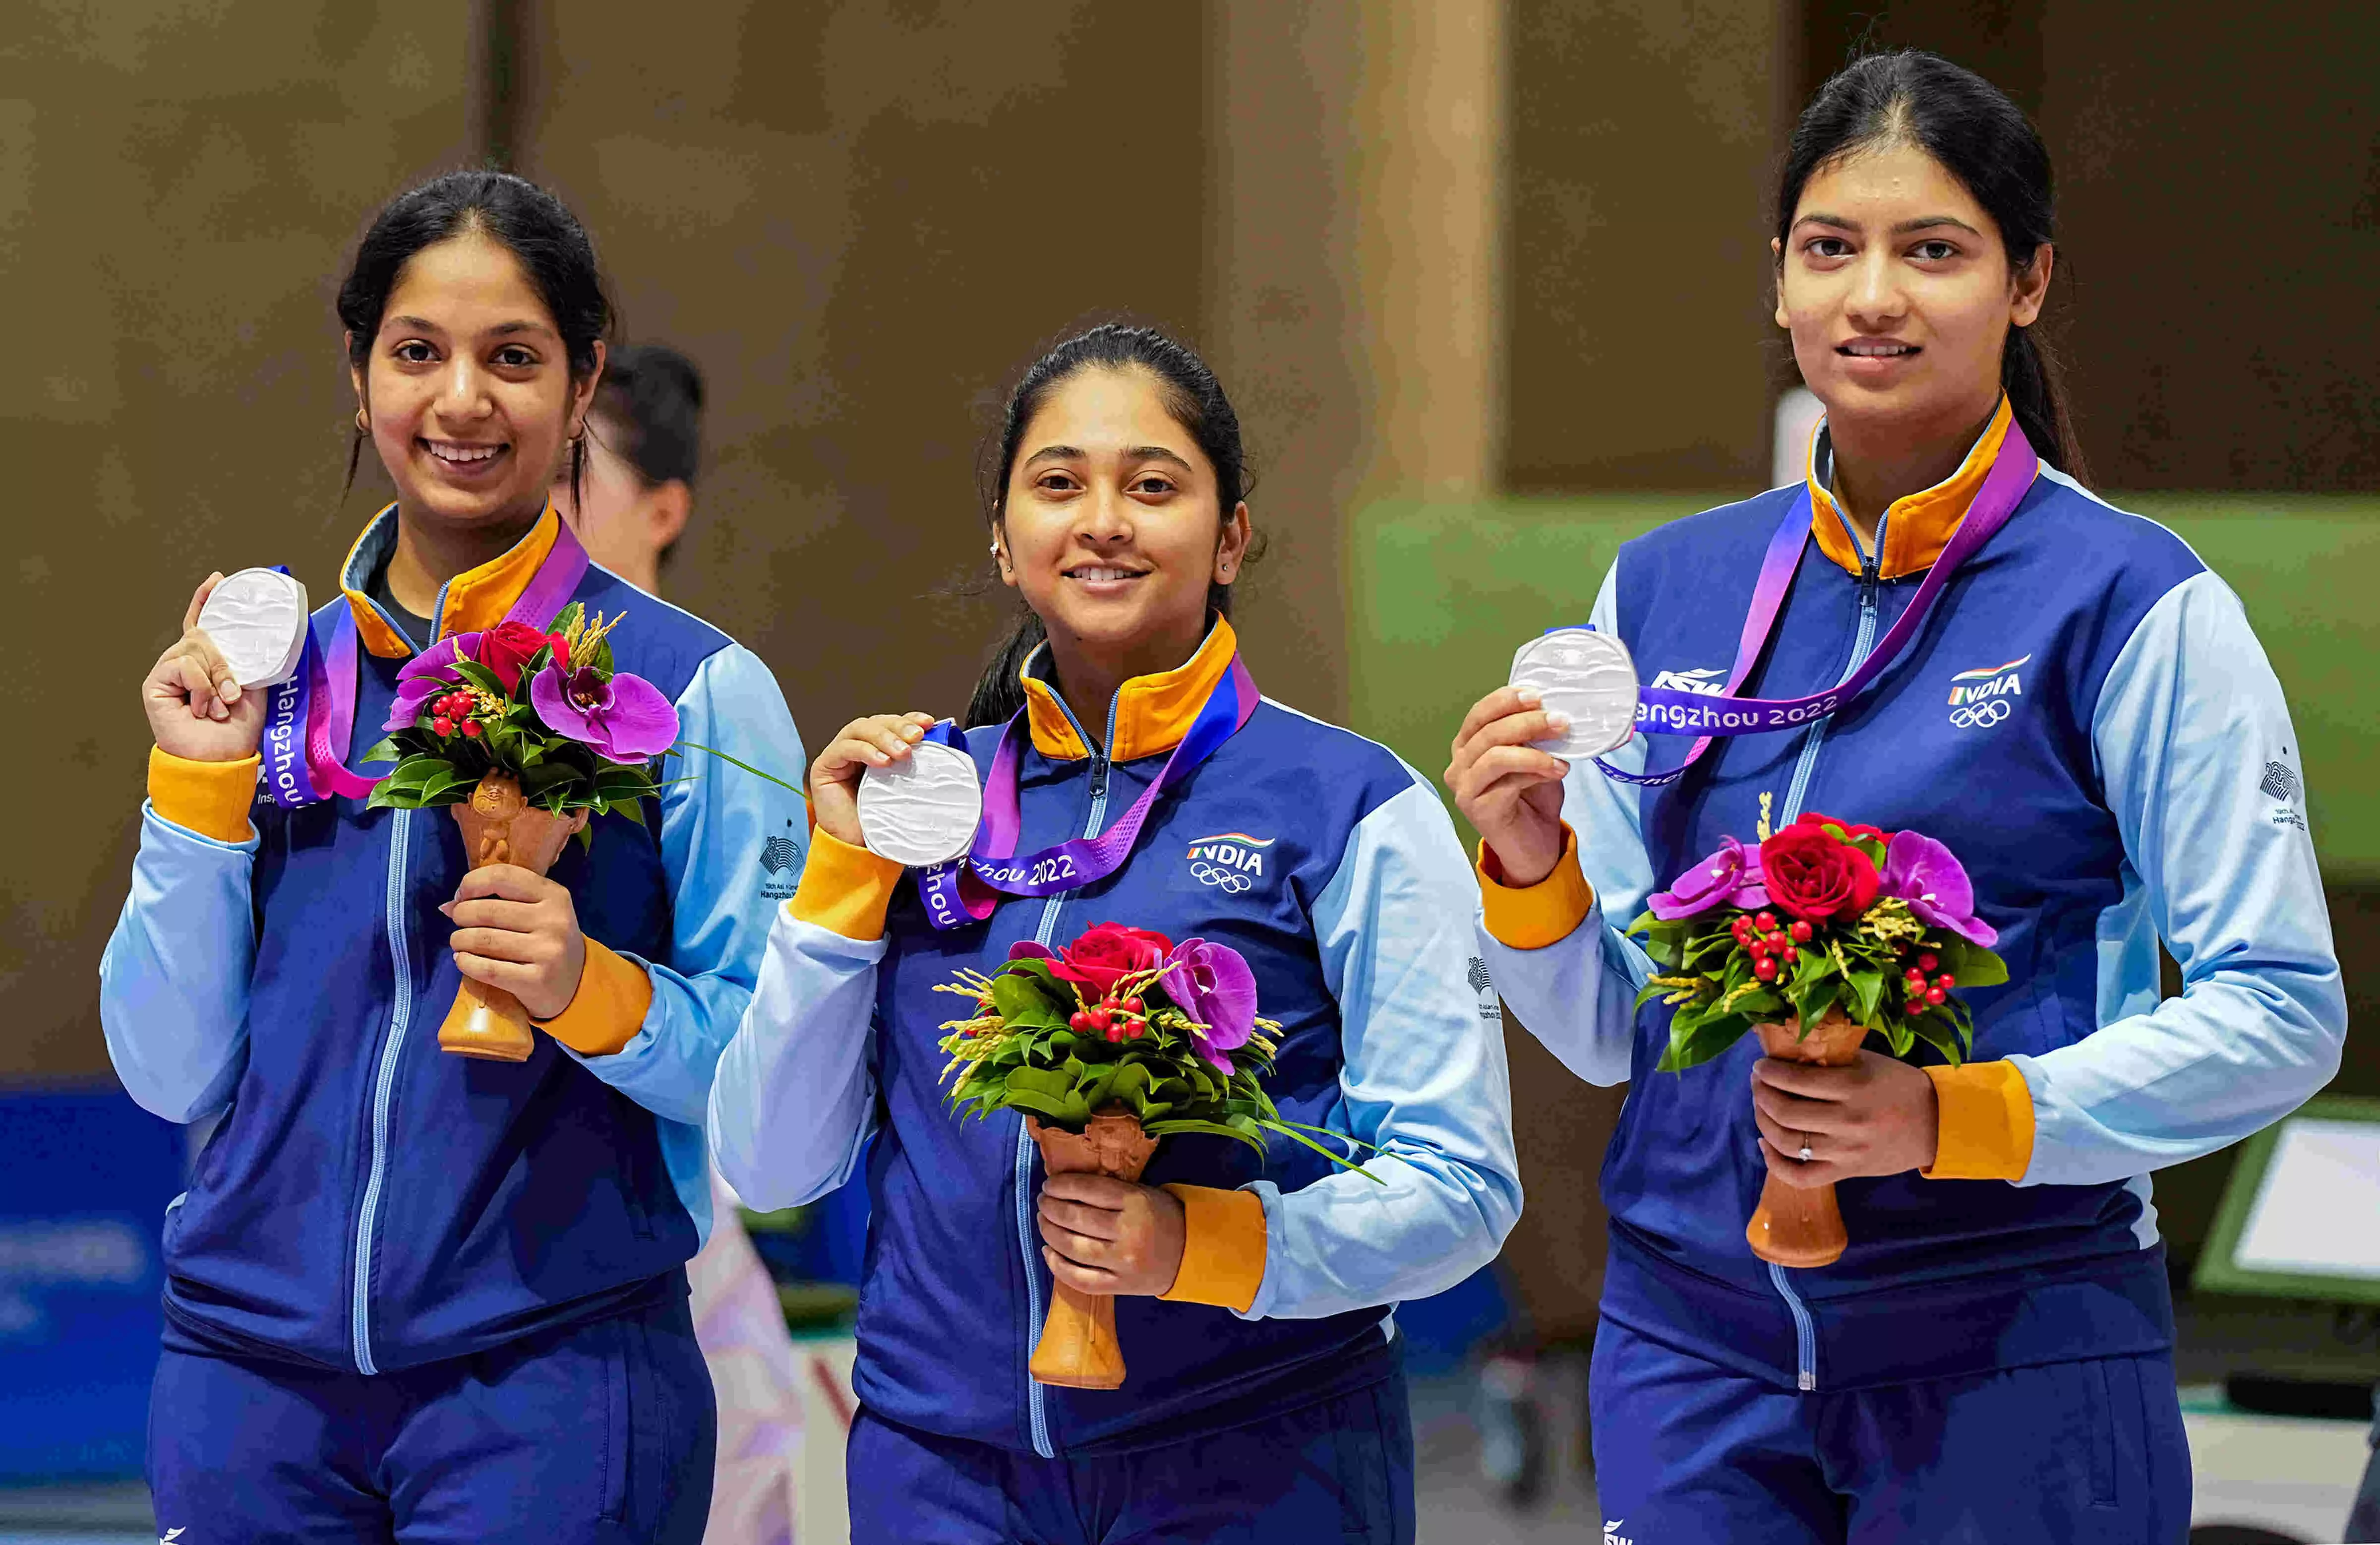 Indian womens 10m air rifle team bags Asian Games silver